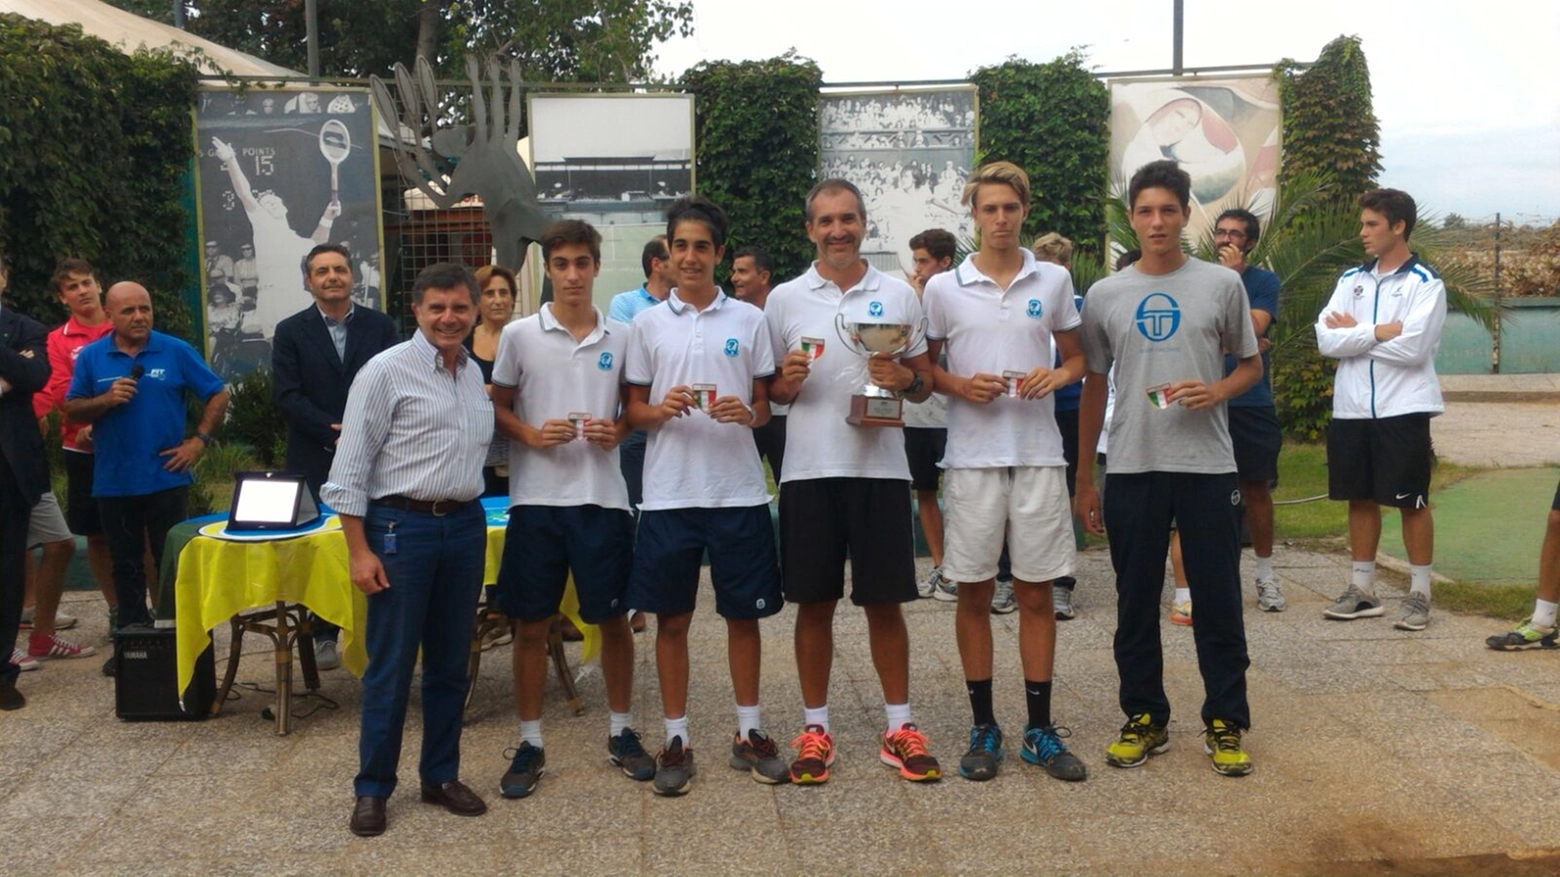 La squadra maschile del Tc Prato under 16